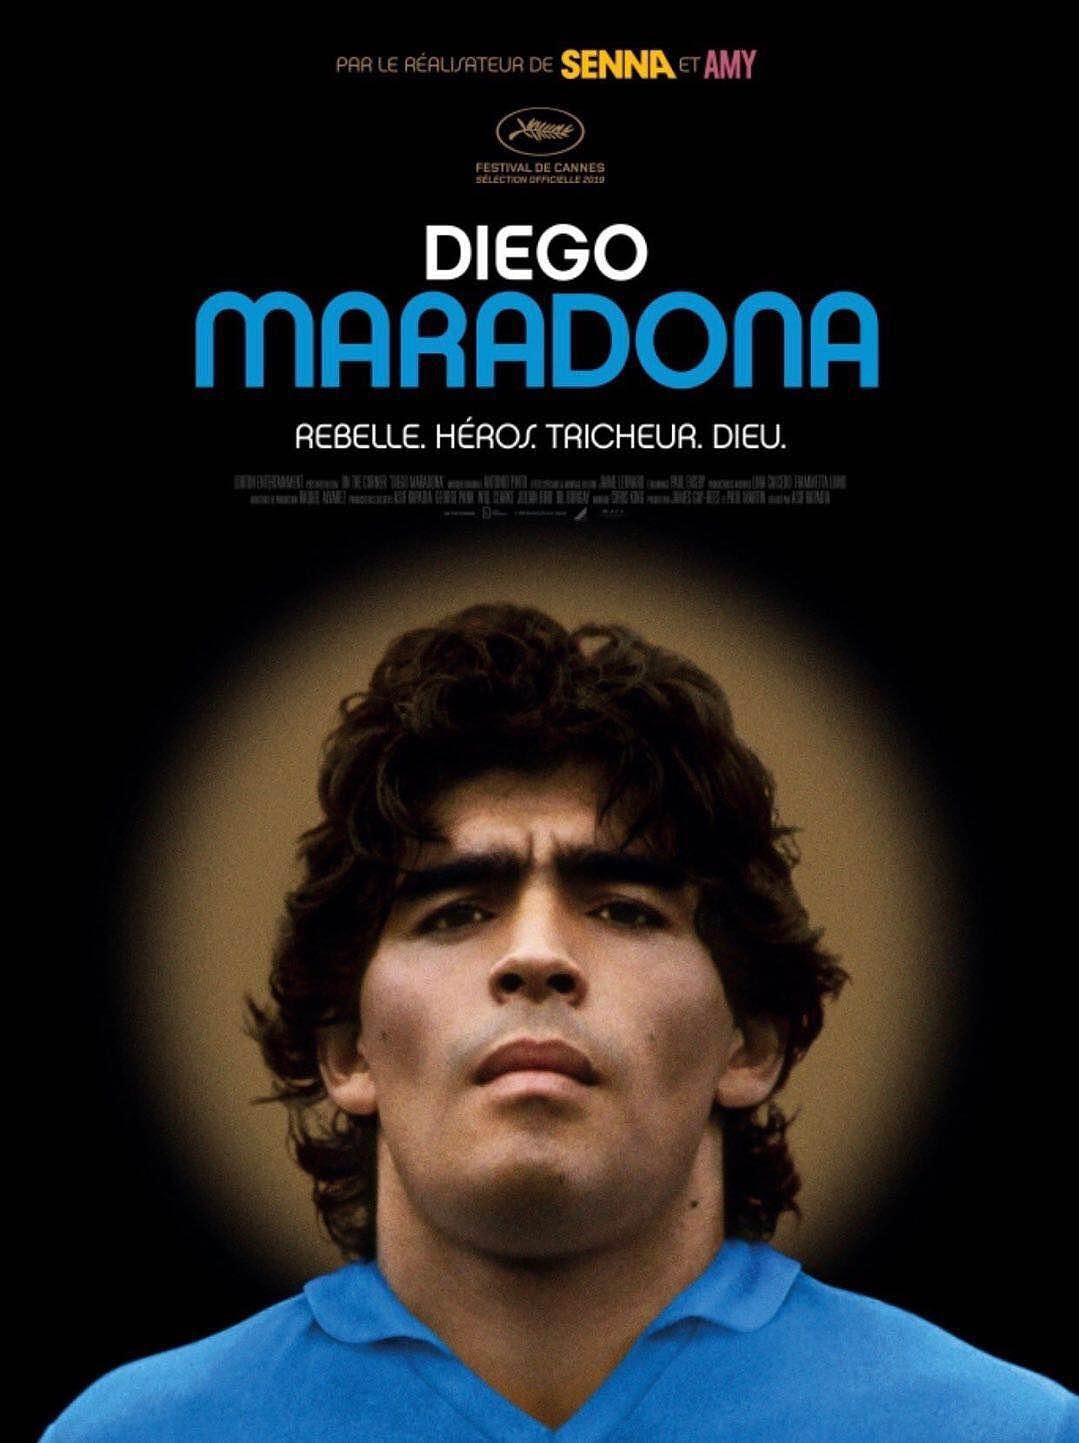 马拉多纳 Diego.Maradona.2019.SUBBED.1080p.BluRay.REMUX.AVC.DTS-HD.MA.5.1-FGT 24.87GB-1.png